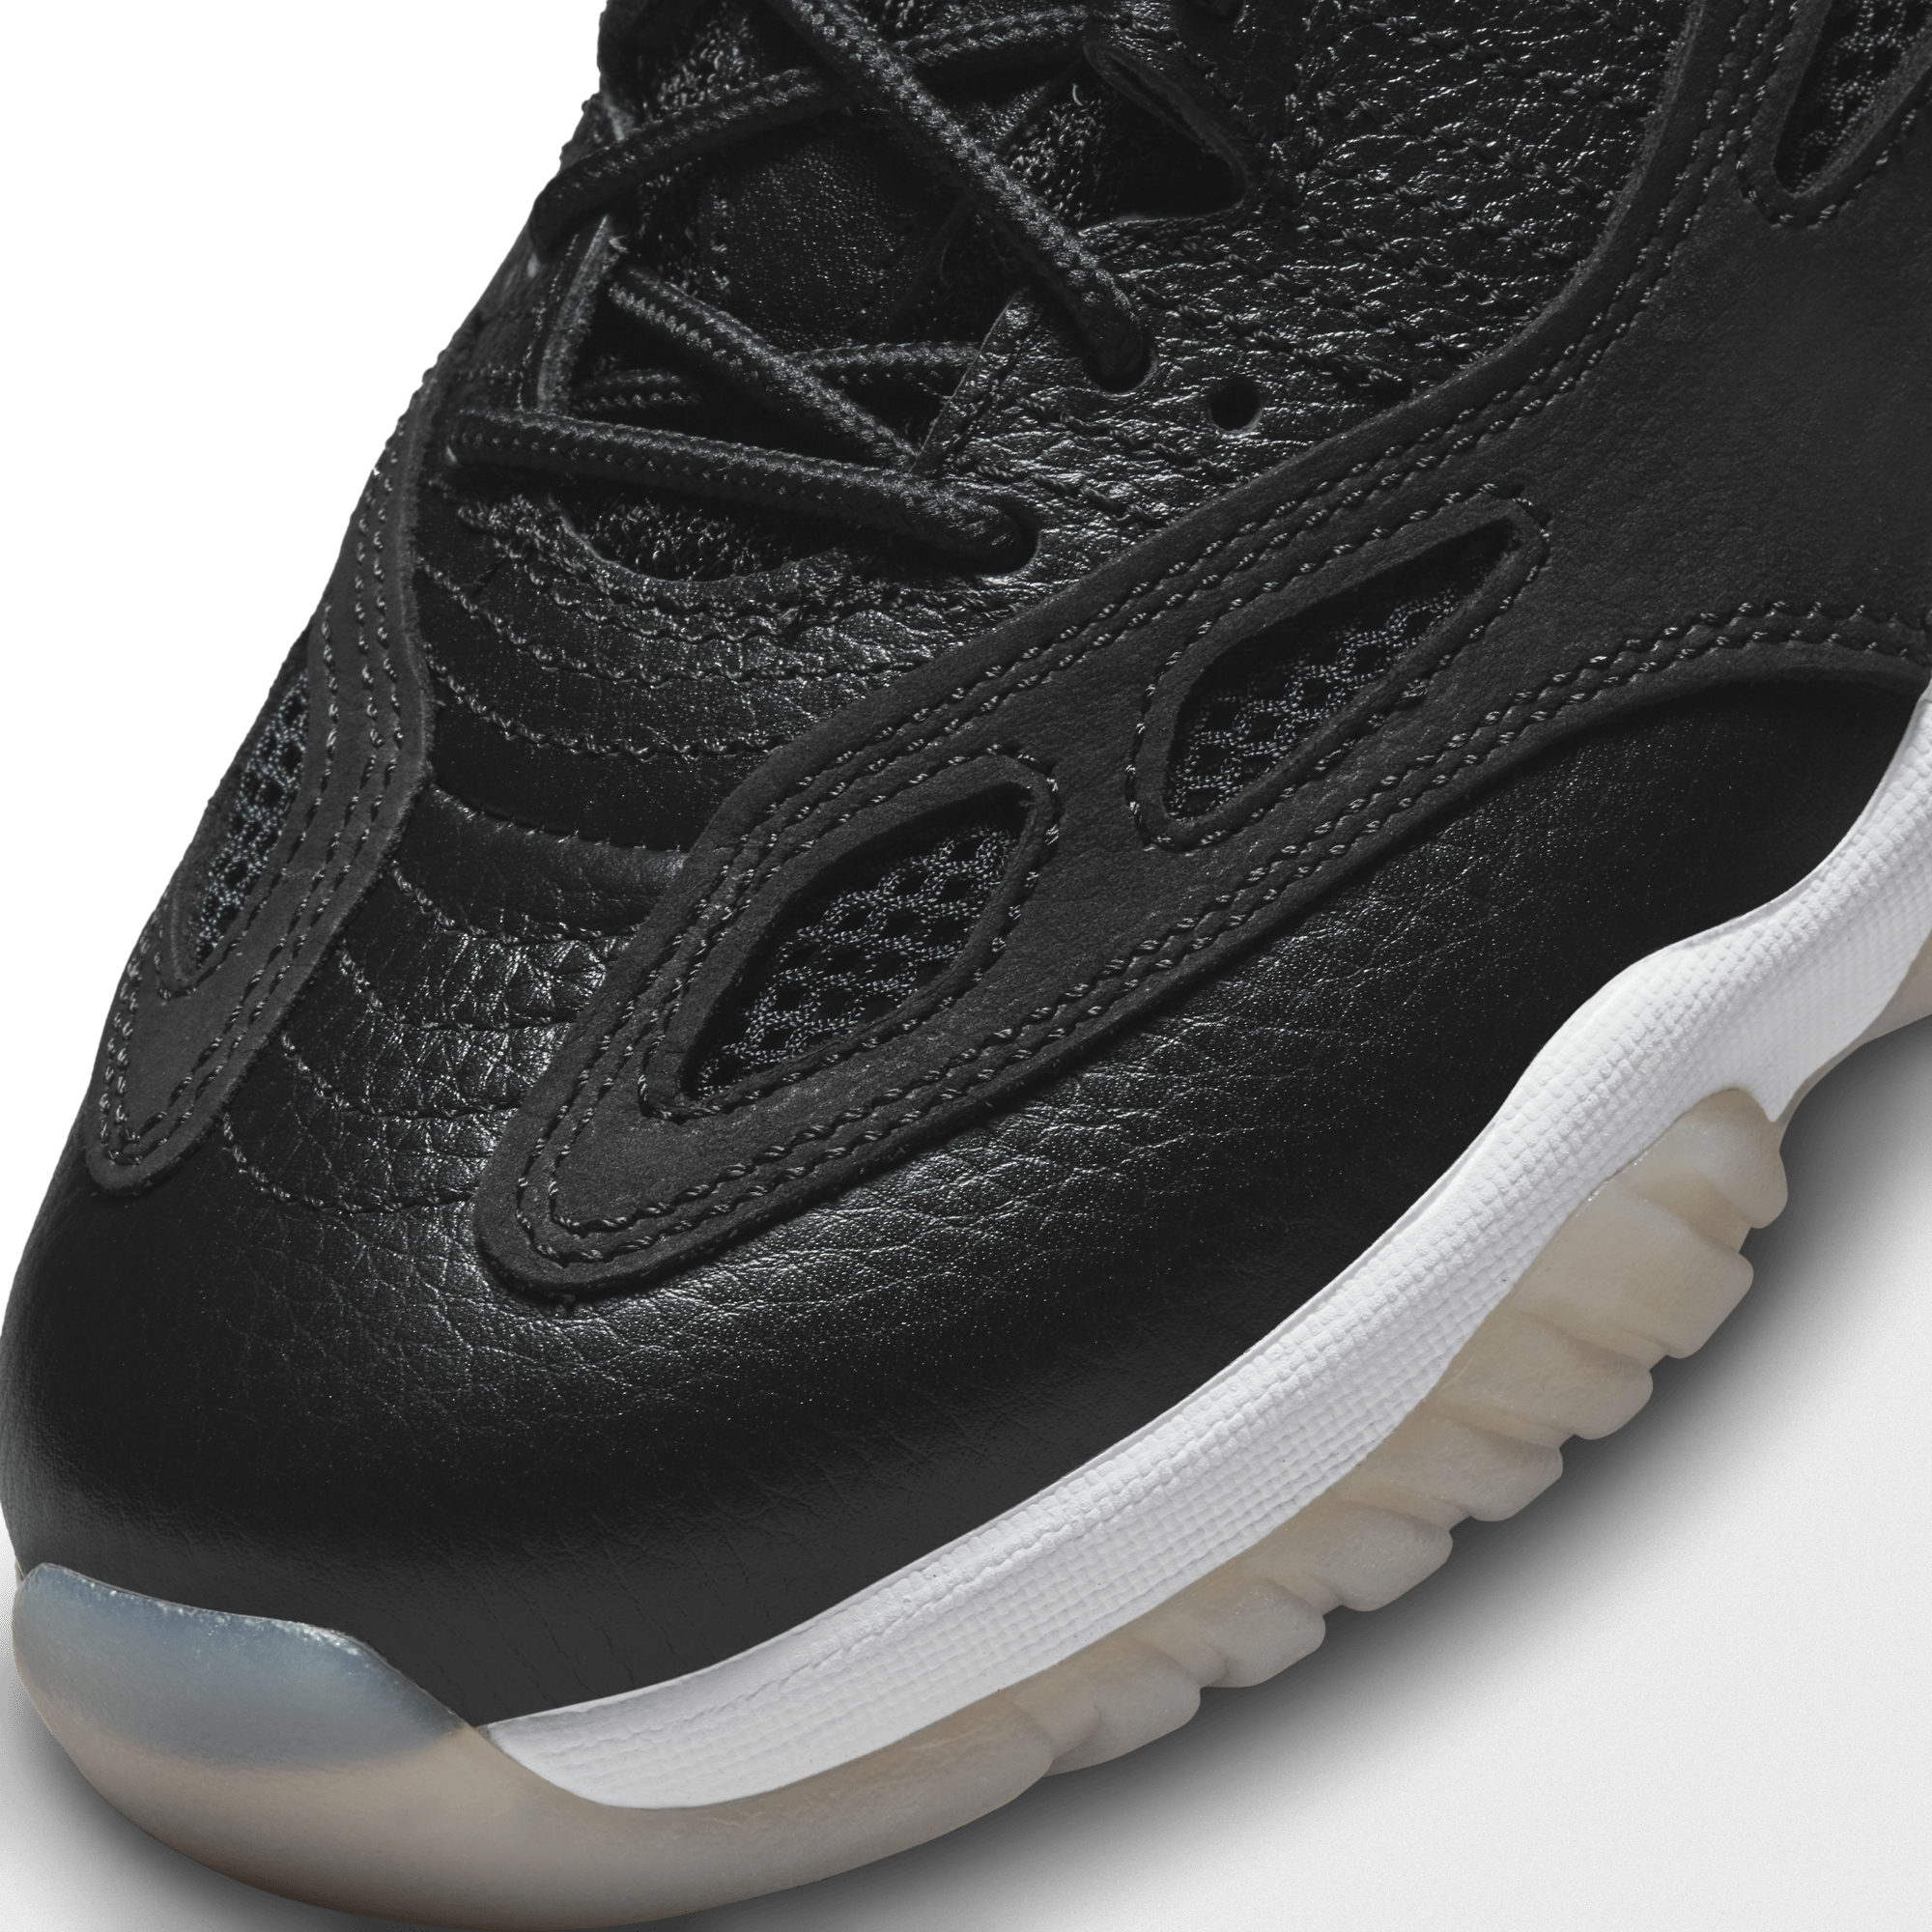 Air Jordan 11 Retro Low IE 'Black Cement' | Men's Size 10.5